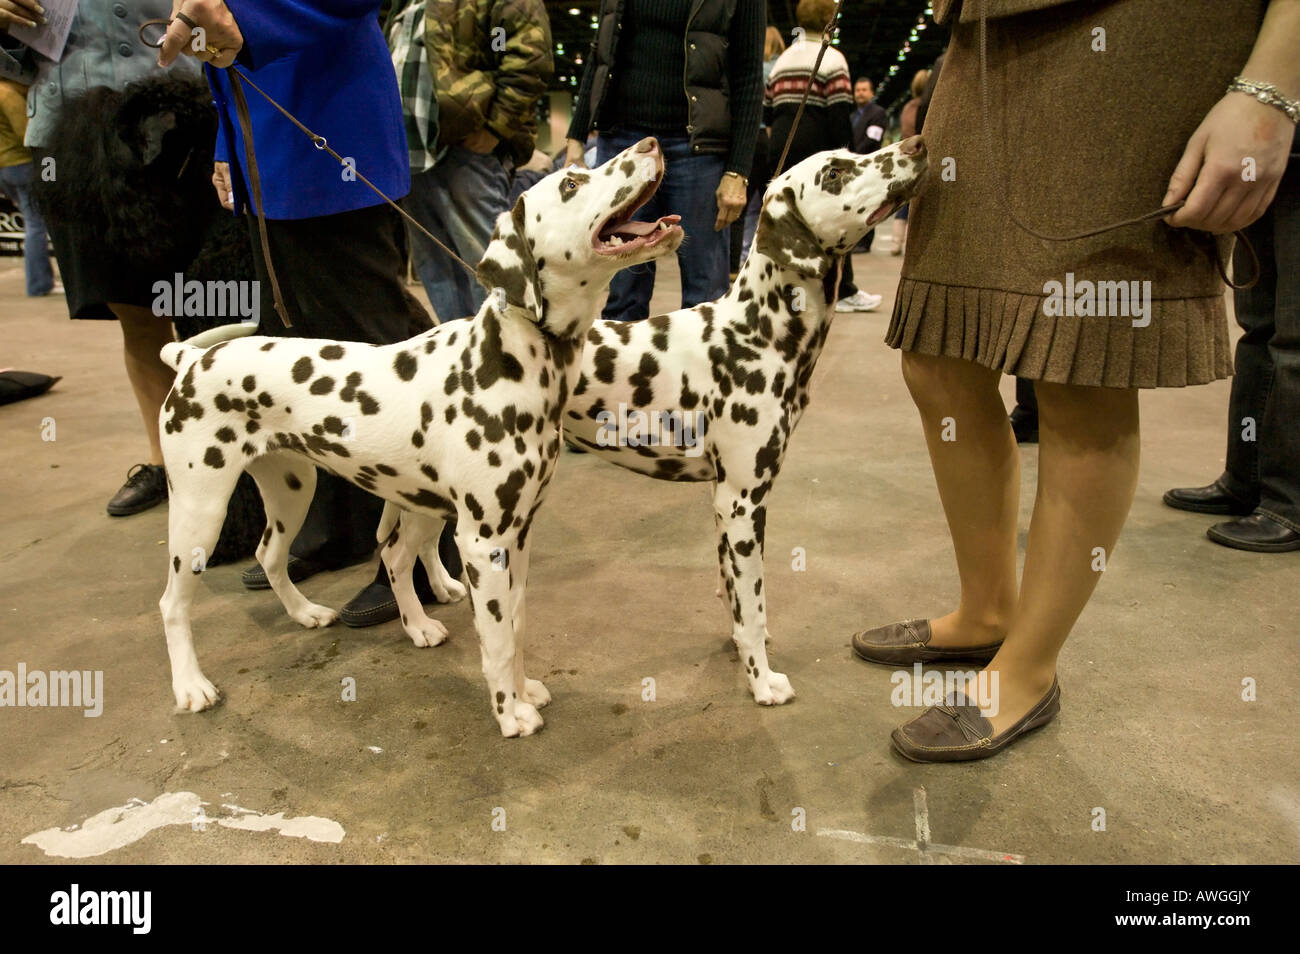 Deux dalmatiens au Detroit 2008 Kennel Club Dog Show de Detroit Michigan USA. Banque D'Images